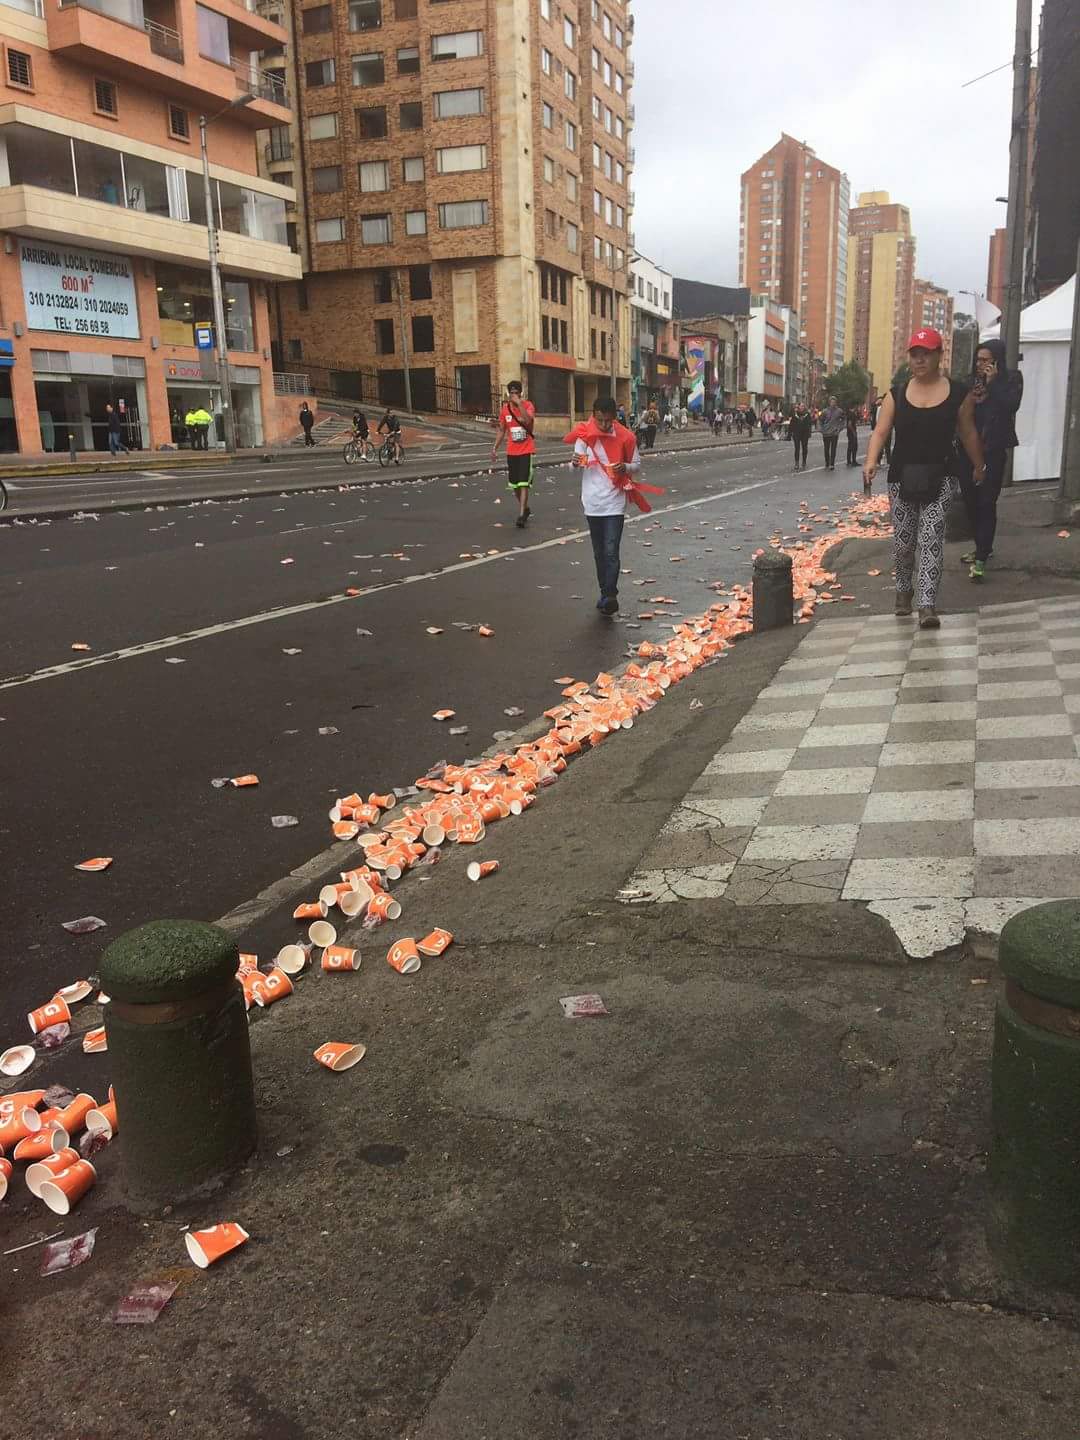 Juego limpio, por favor, señores de la Media Maratón de Bogotá